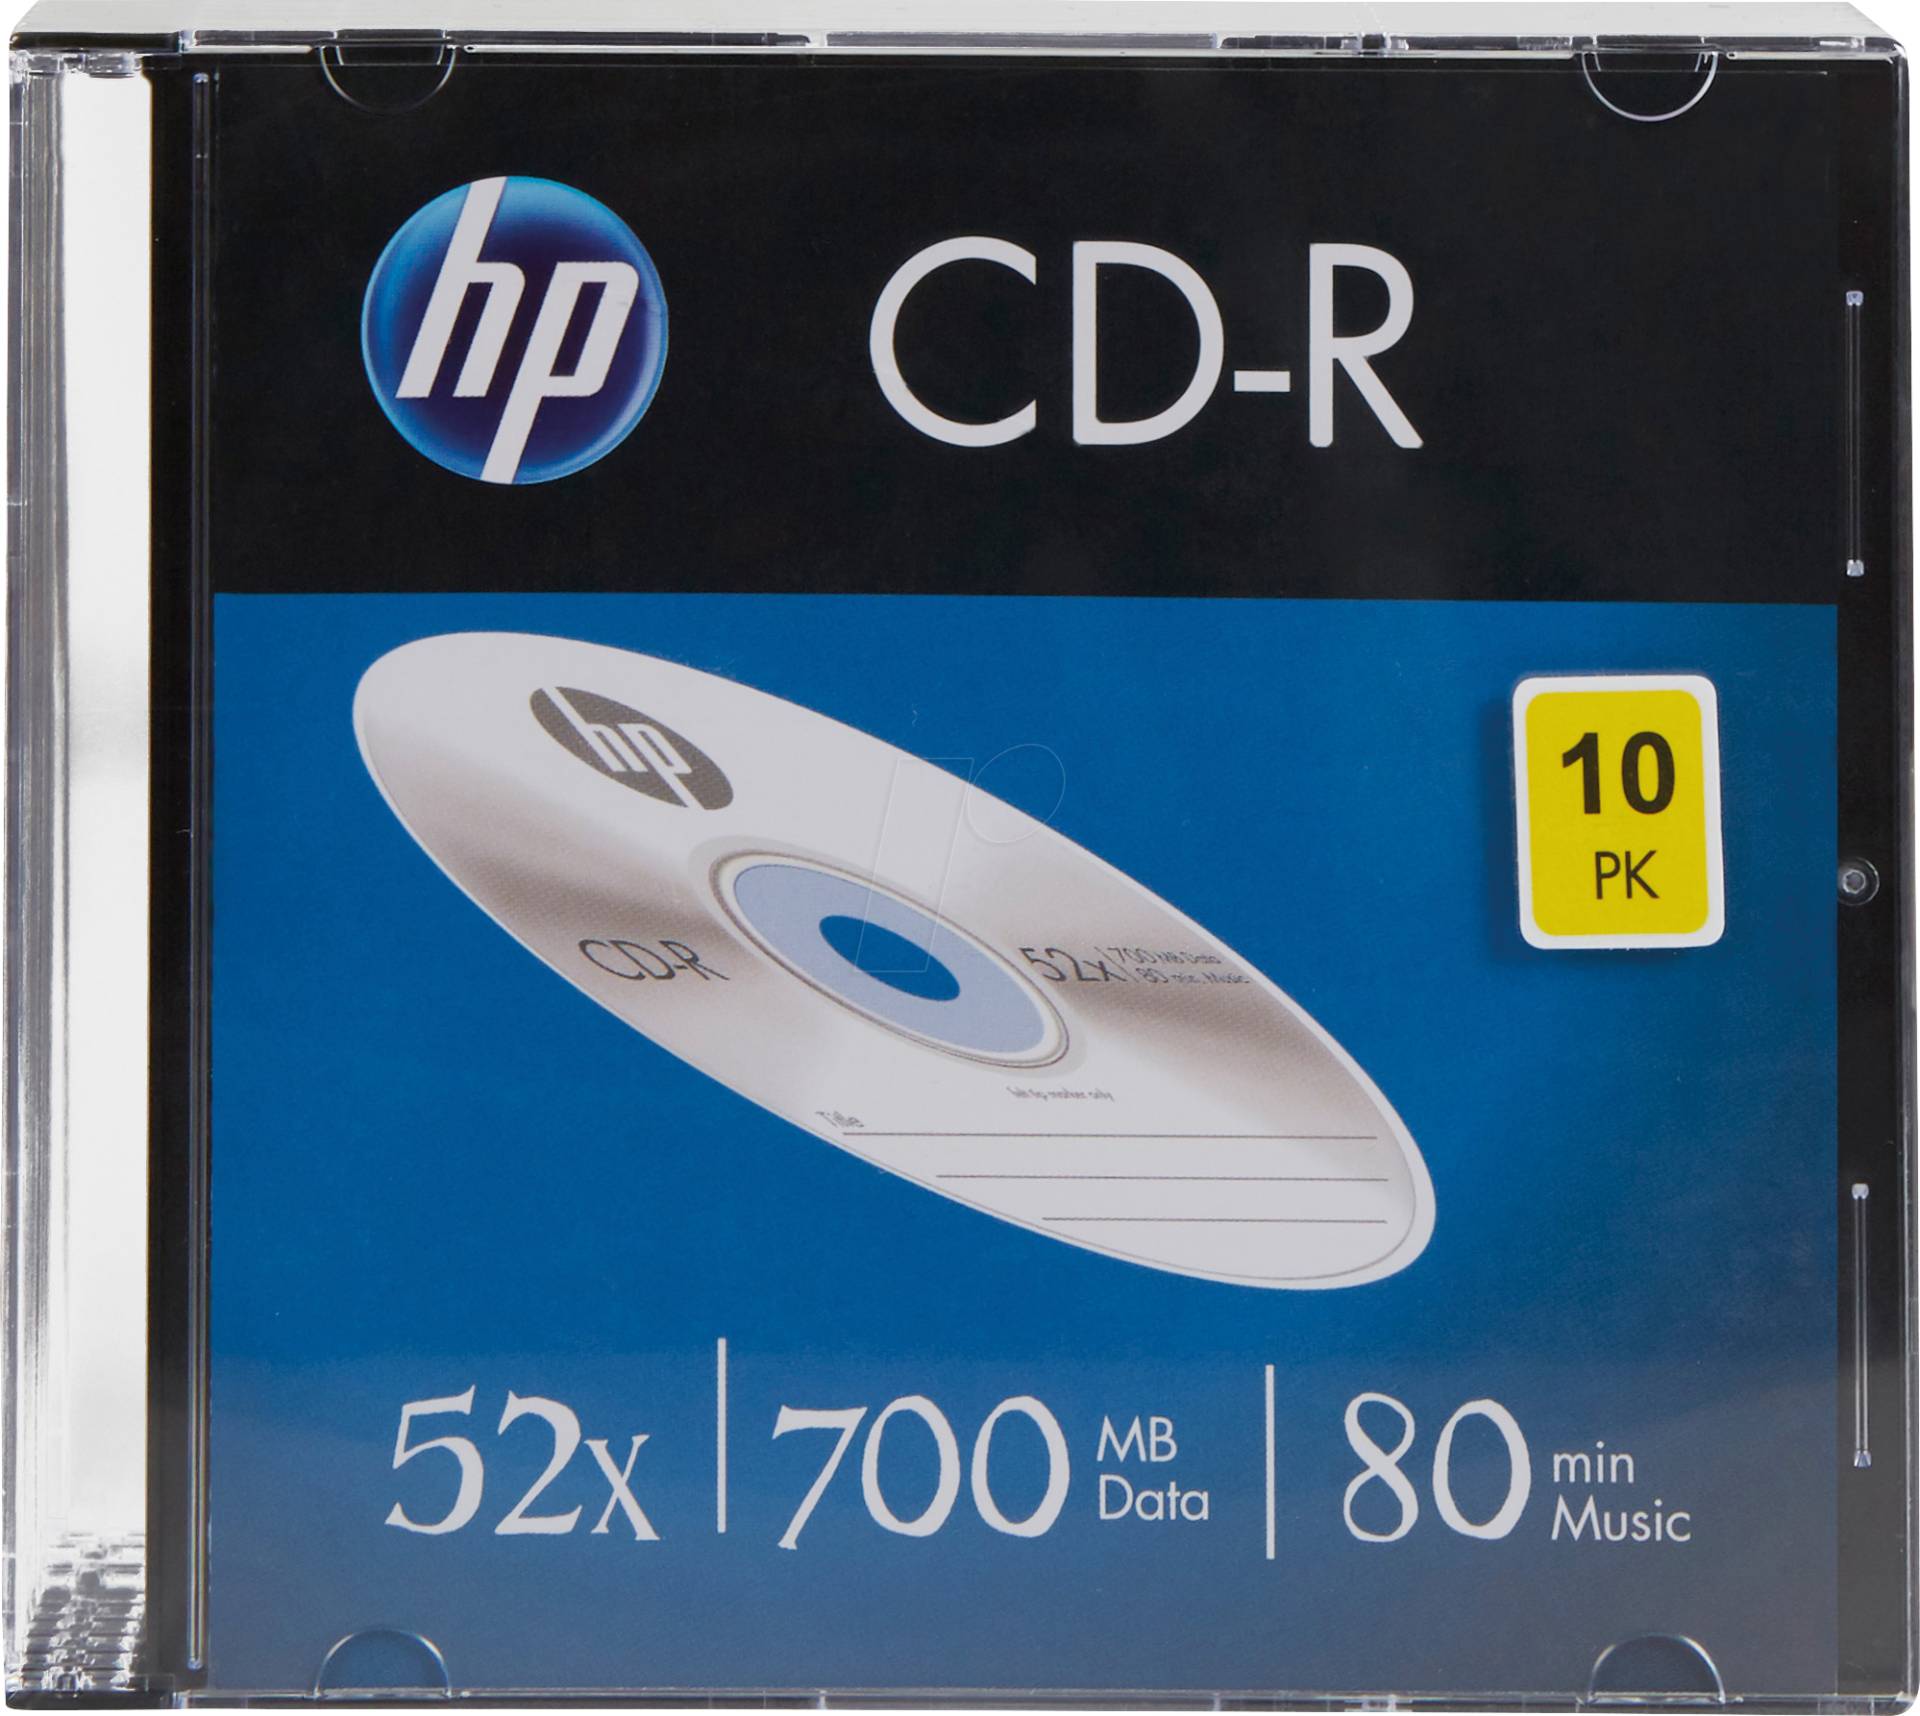 HP CRE00085 - CD-R 700MB/80min 52x, 10-er Slimcase von Hewlett Packard